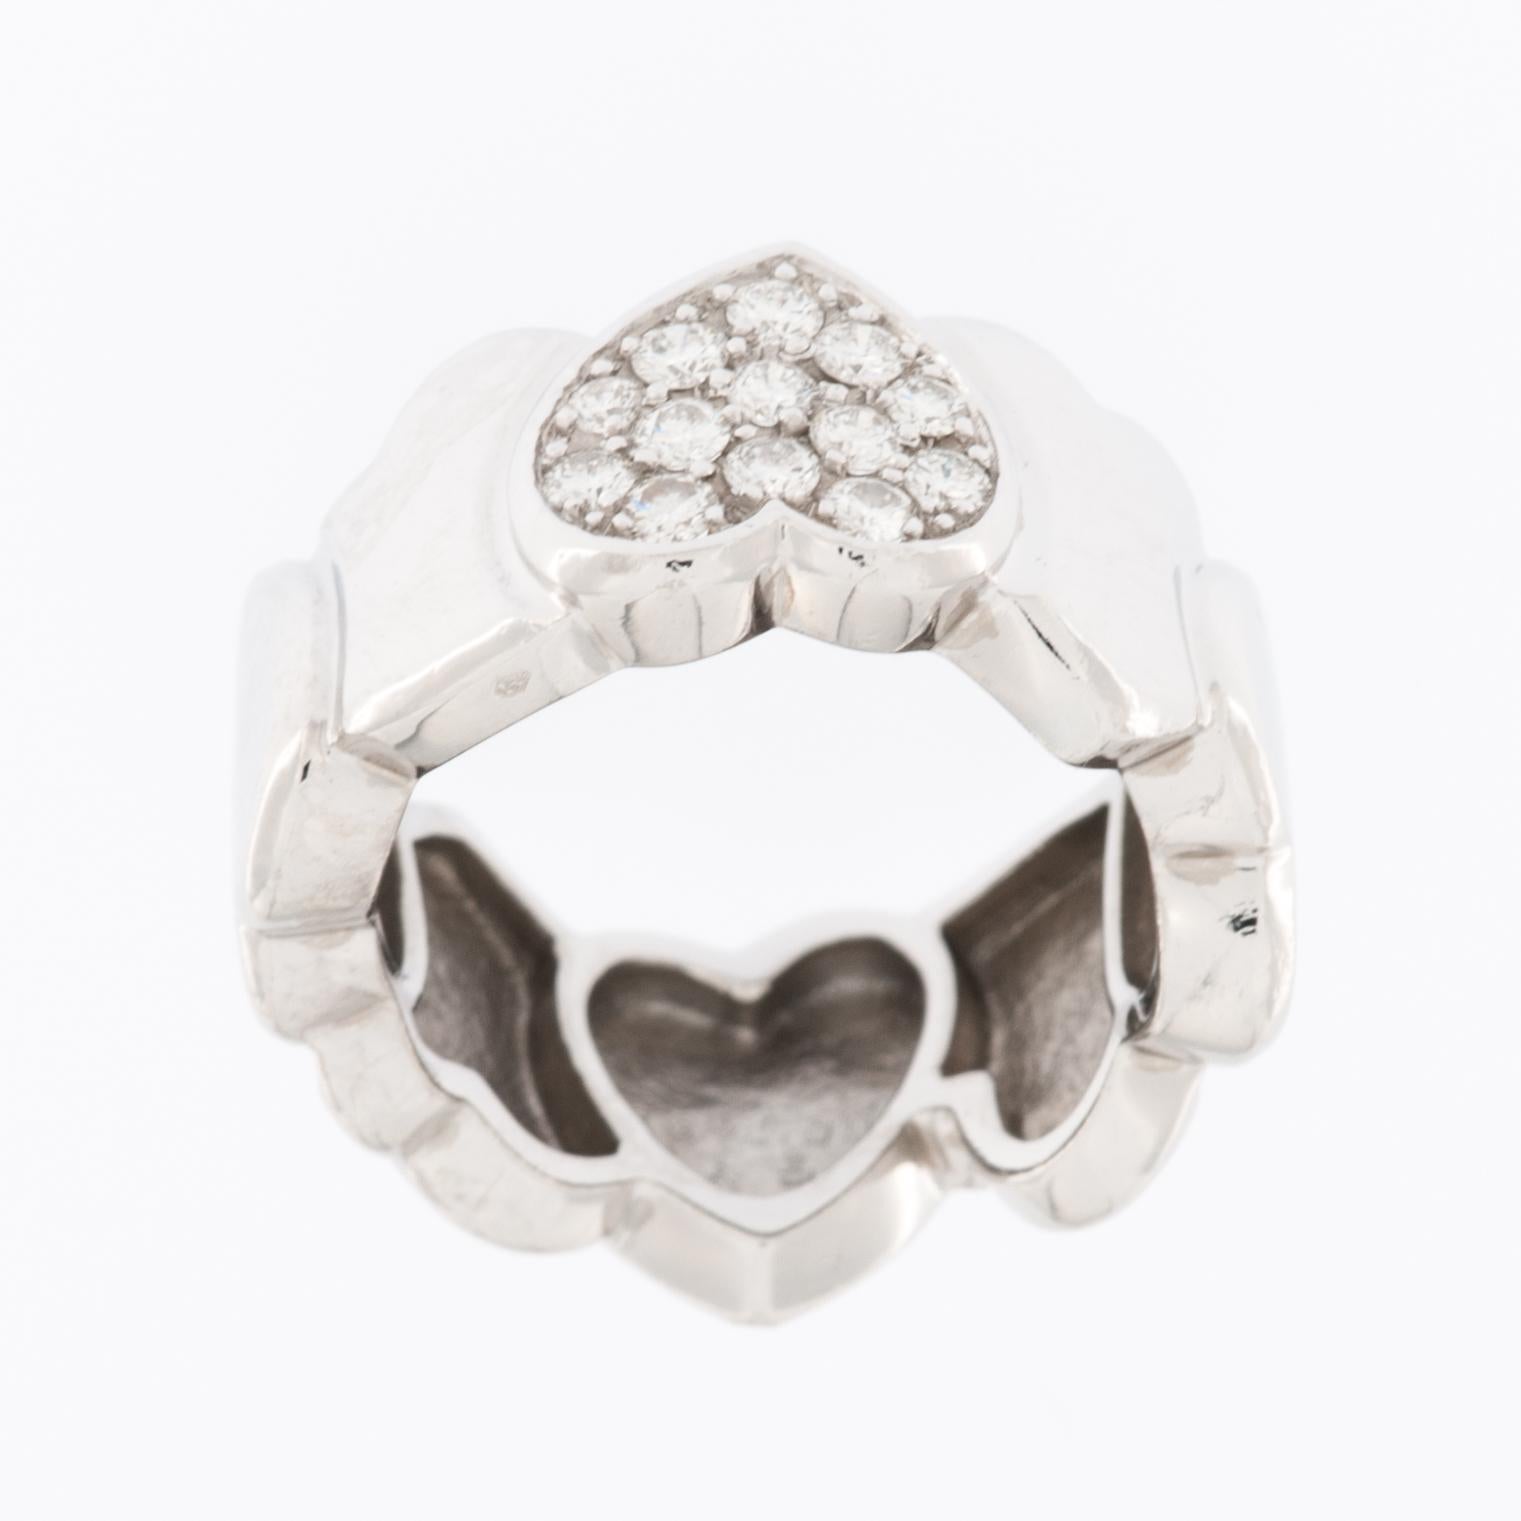 Der FRED PARIS Herz-Diamantring ist ein luxuriöses und exquisites Schmuckstück, das aus 18 Karat Weißgold gefertigt ist. Dieser Ring ist als Symbol der Liebe und Zuneigung gedacht und besteht aus 8 Herzen. 

Der Ring ist aus 18-karätigem Weißgold